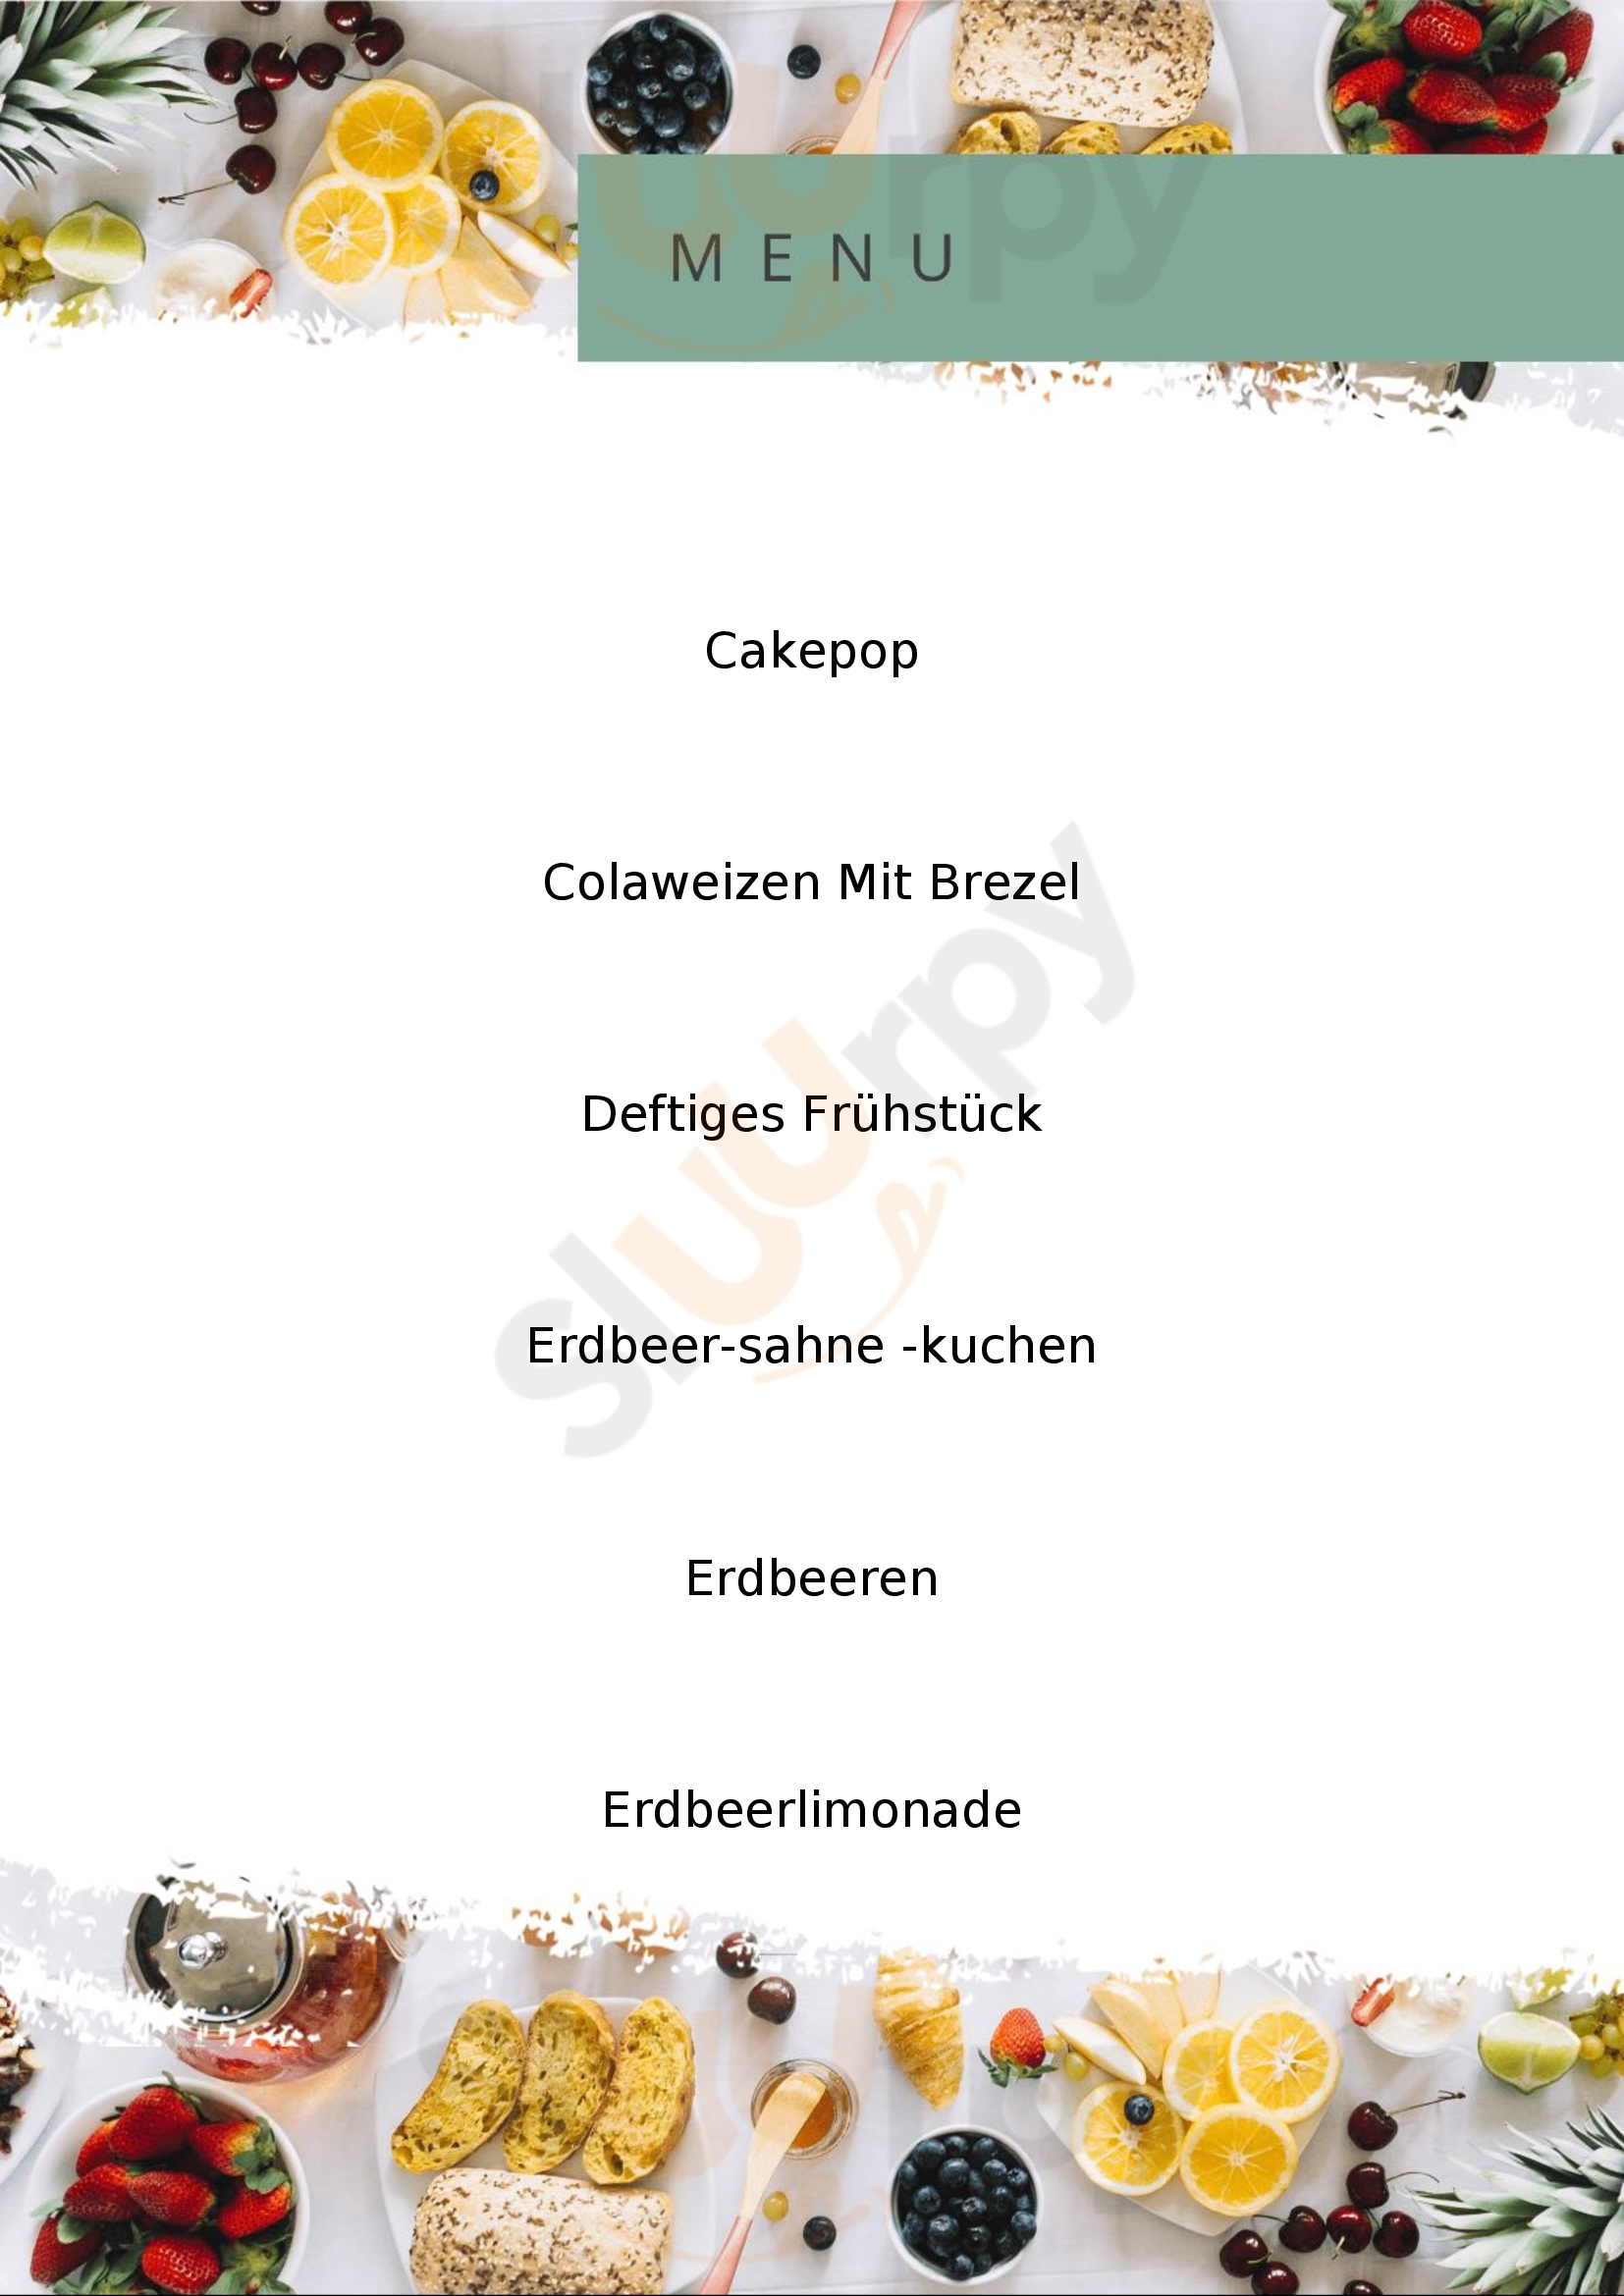 Beerencafé Schwabach Menu - 1